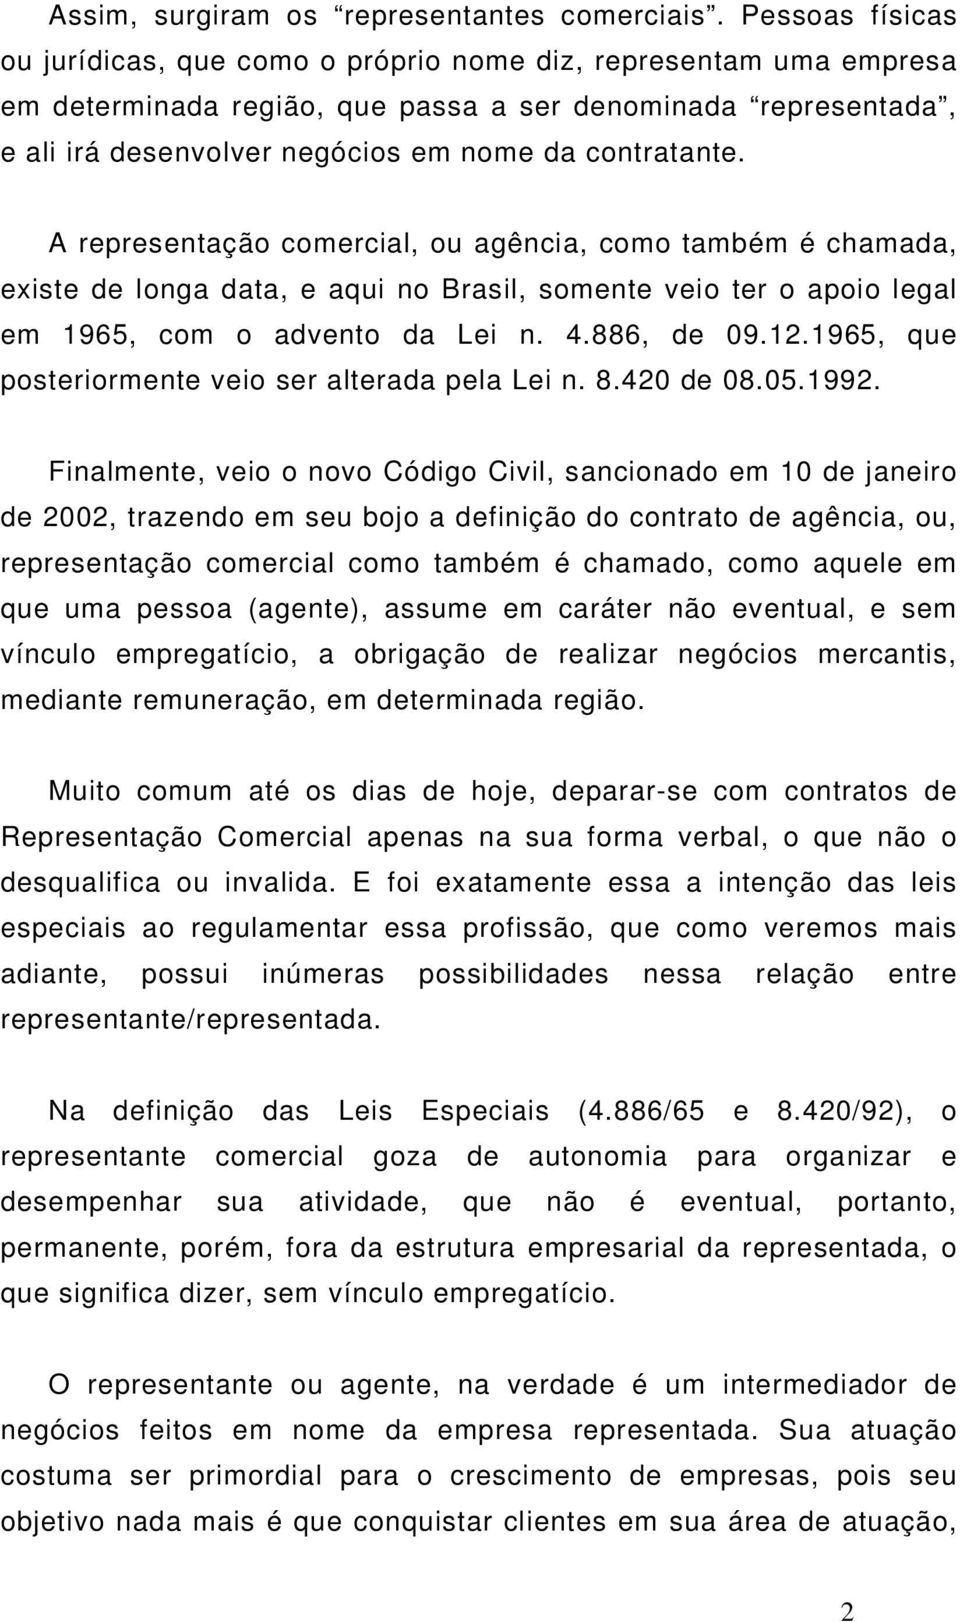 contratante. A representação comercial, ou agência, como também é chamada, existe de longa data, e aqui no Brasil, somente veio ter o apoio legal em 1965, com o advento da Lei n. 4.886, de 09.12.